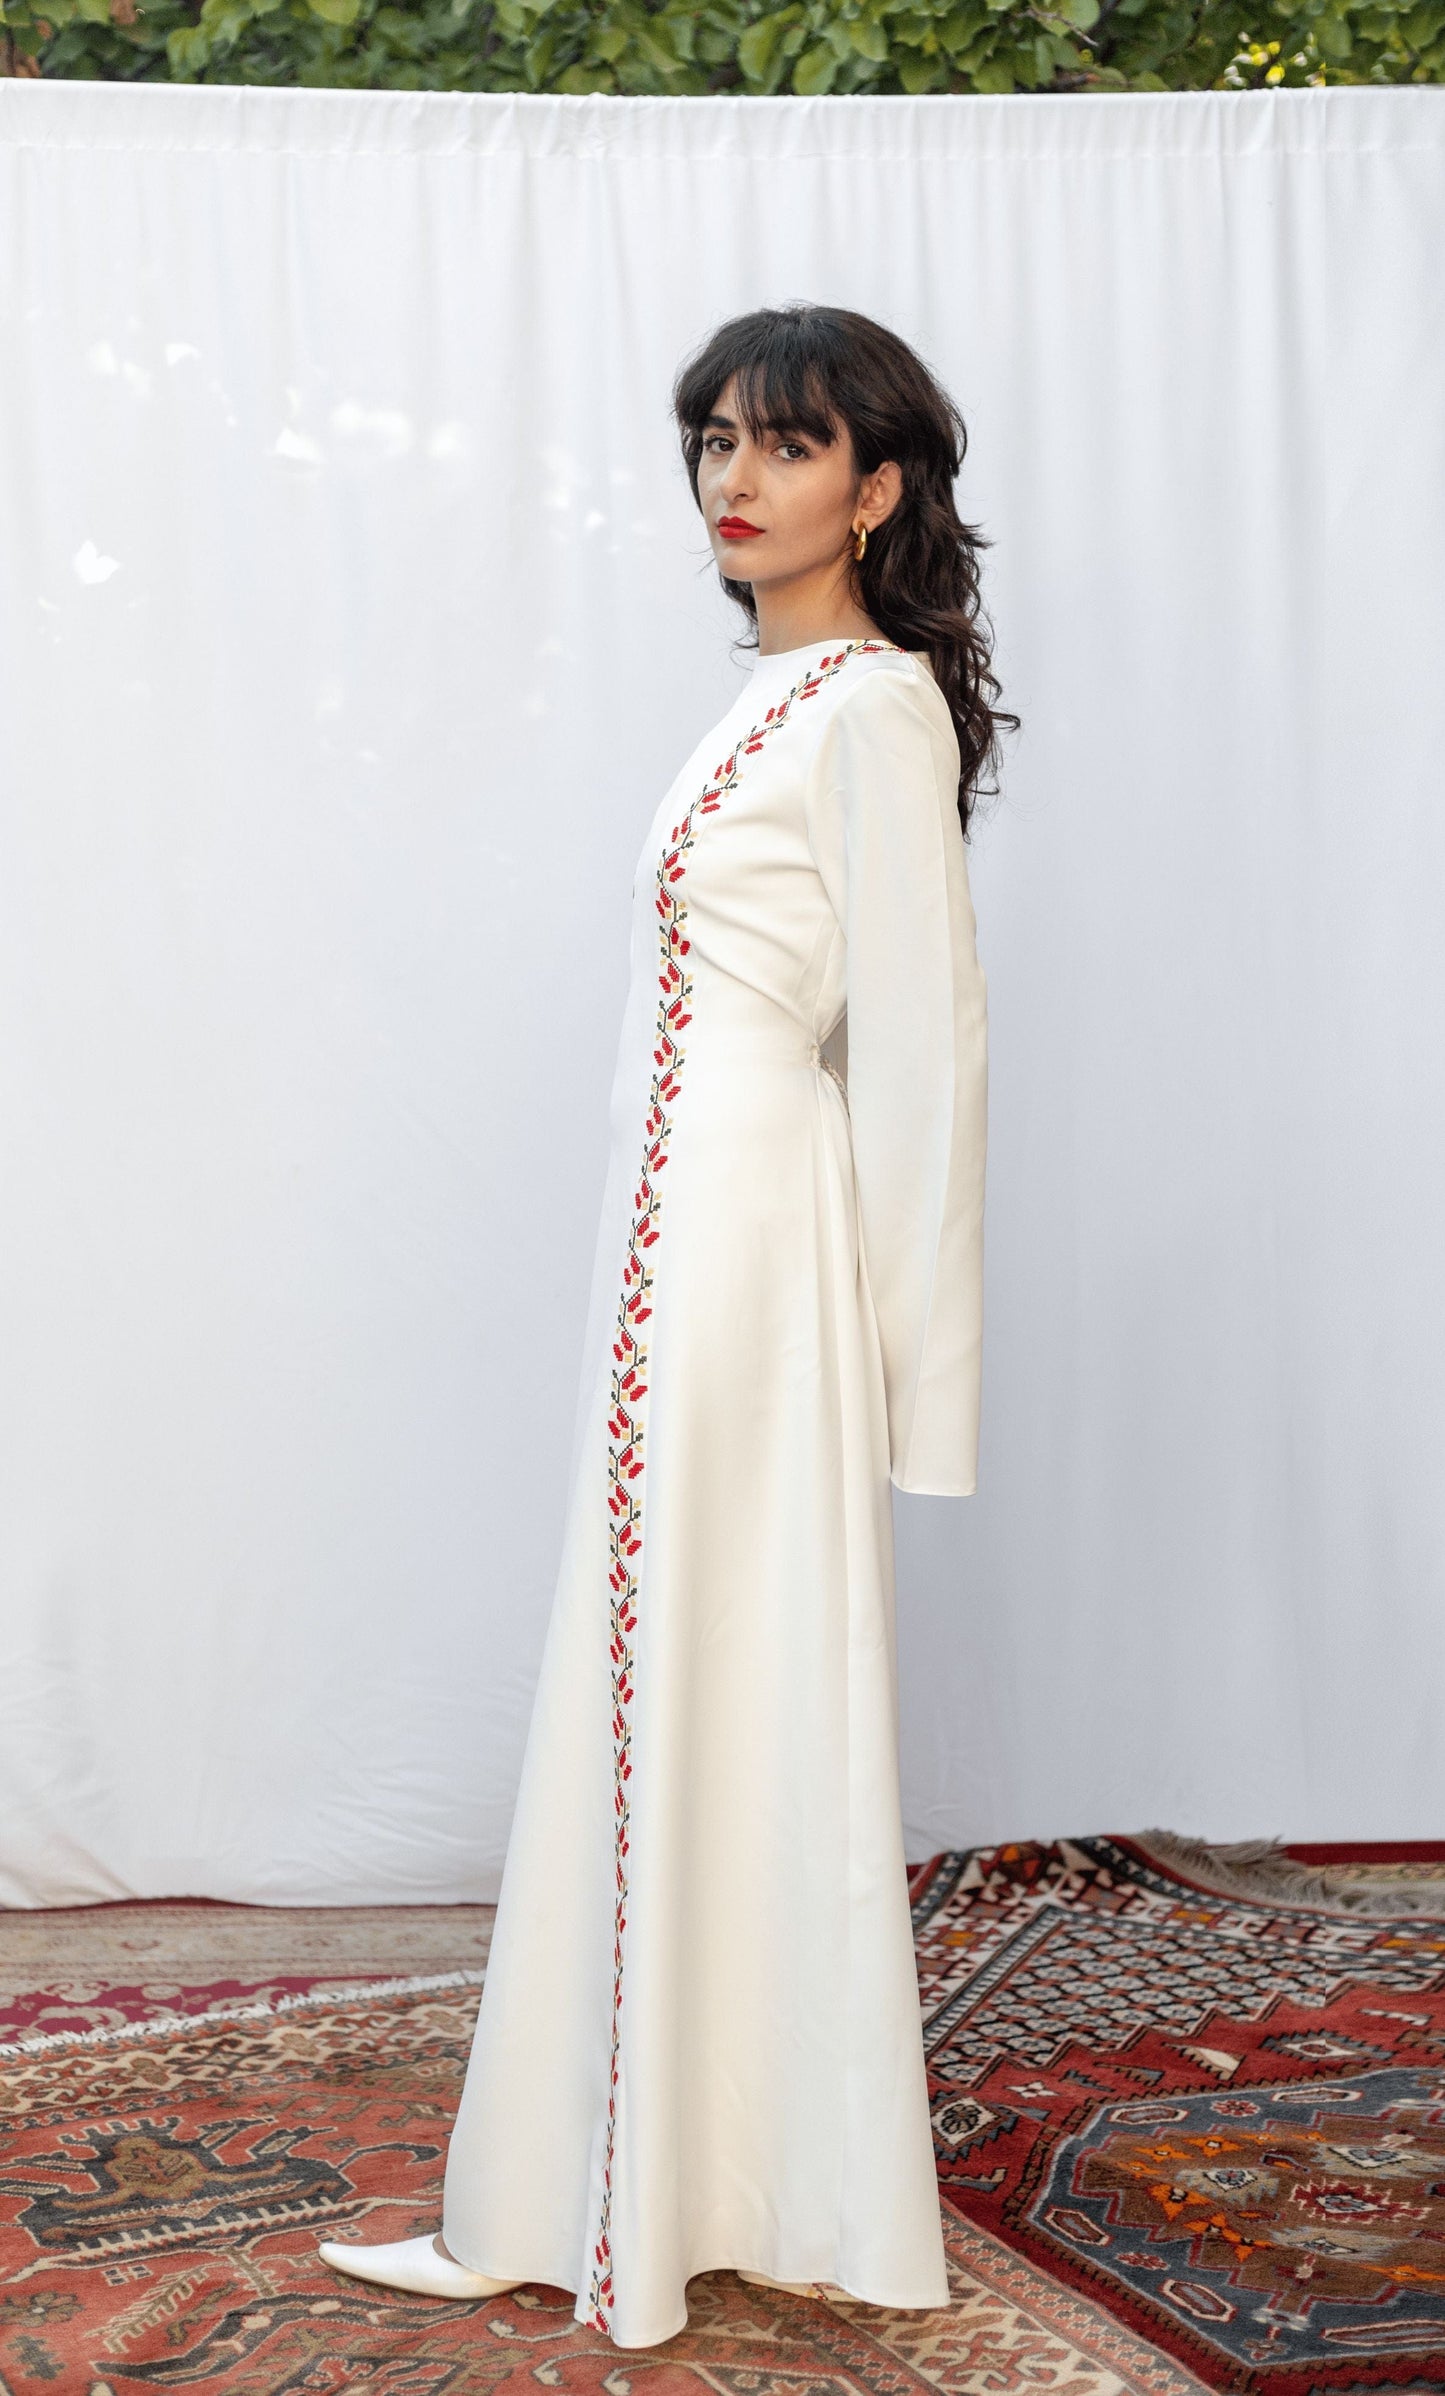 The Zaytouna Dress Deerah